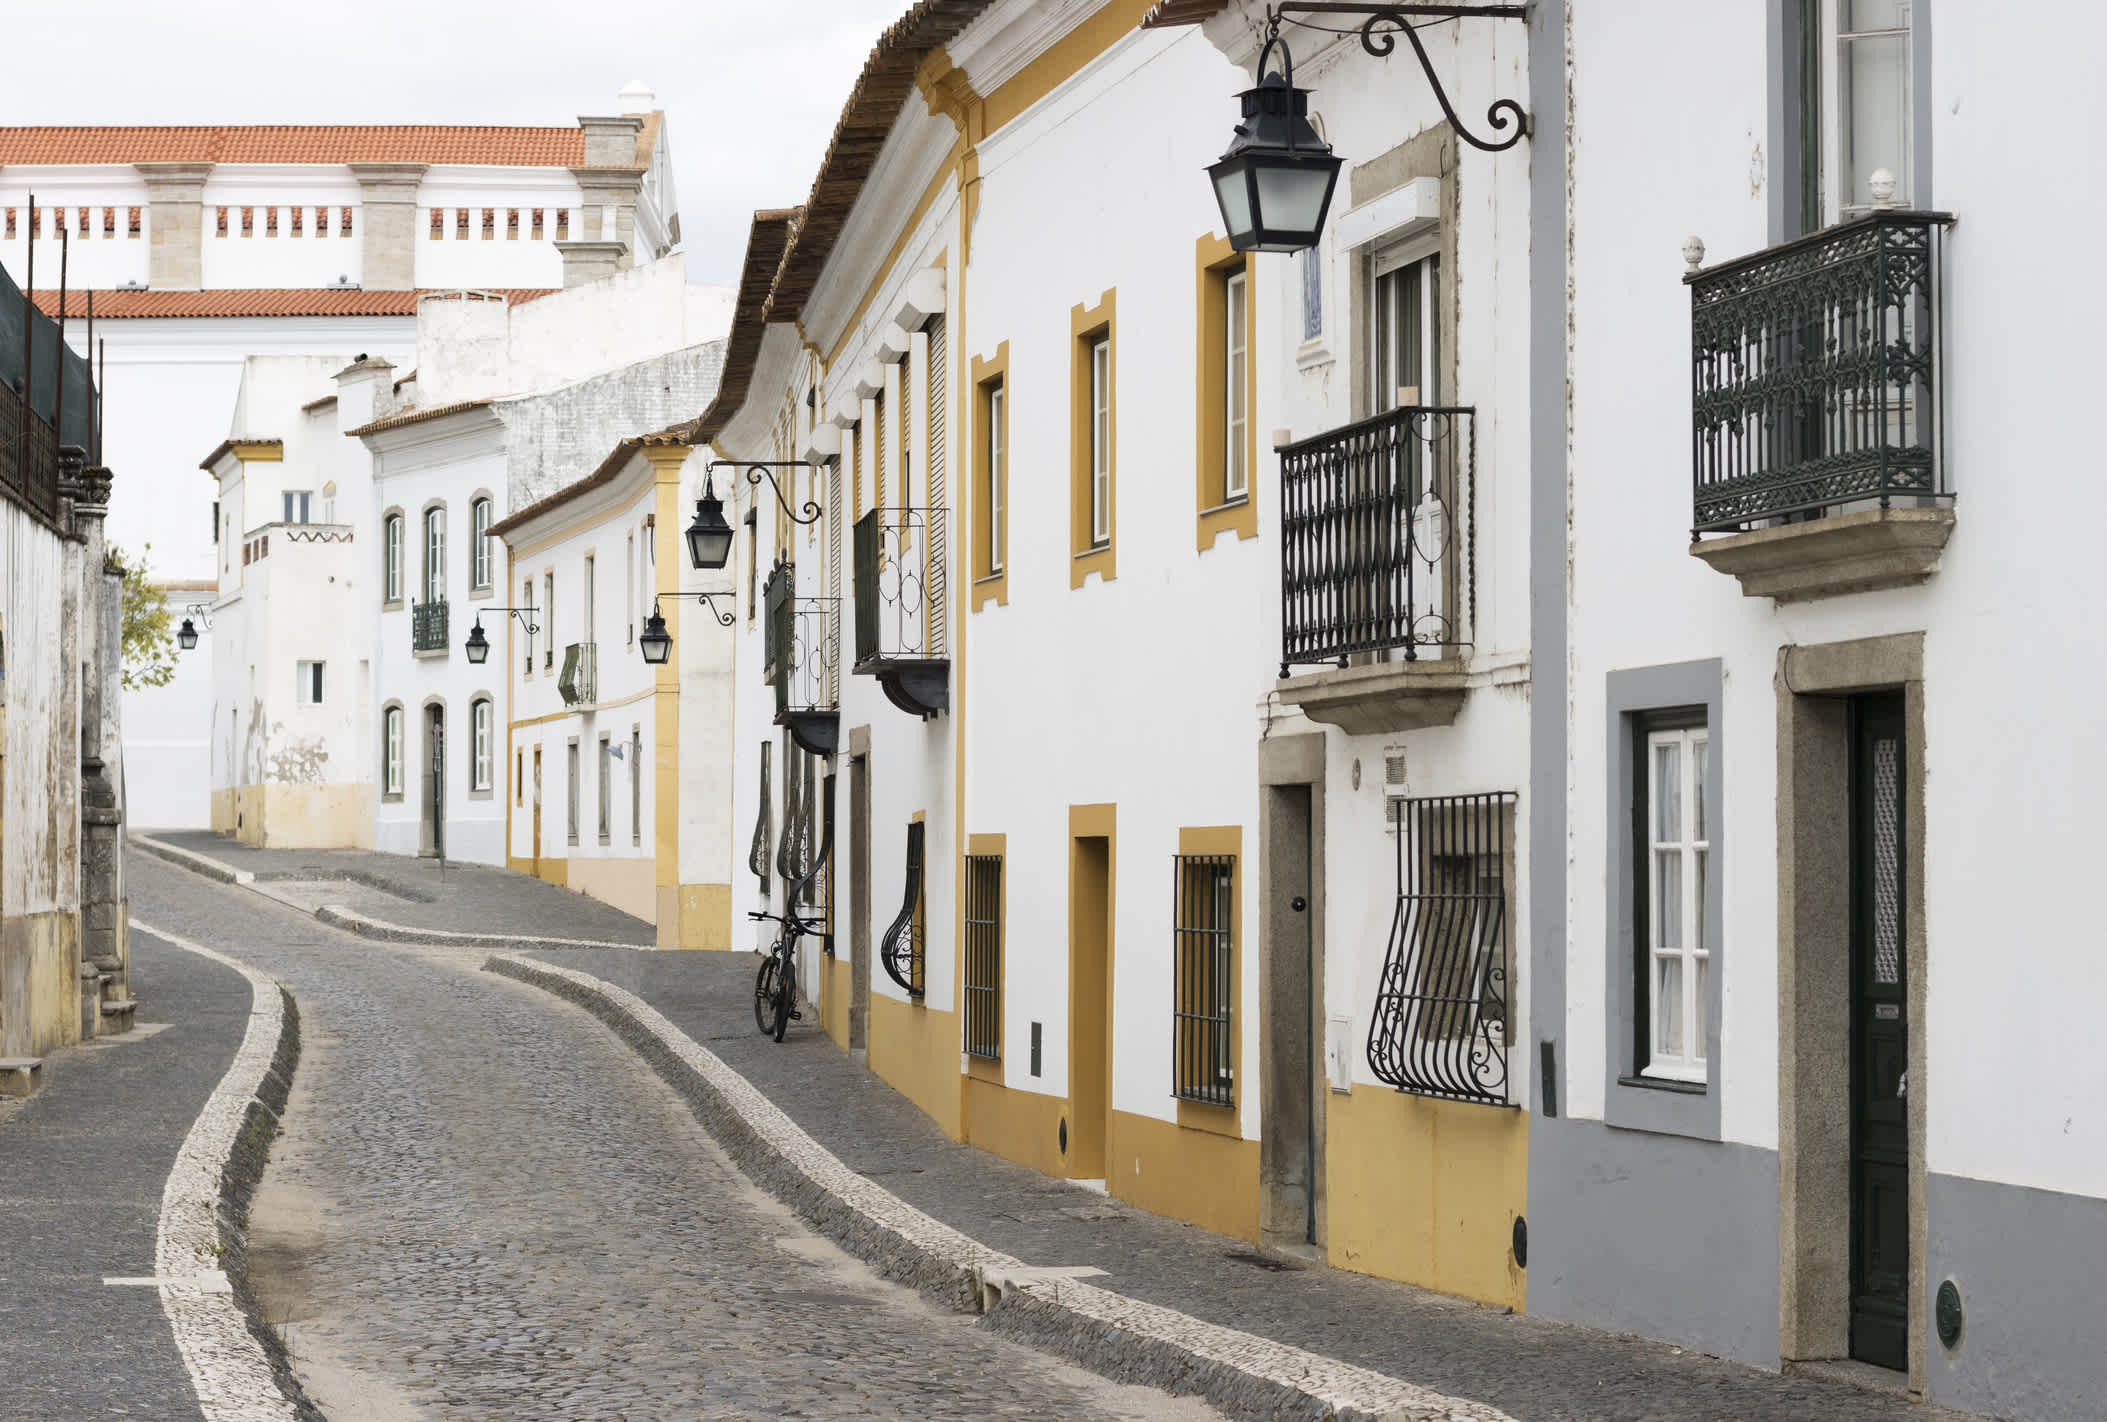 Straße in Evora in Portugal. 

